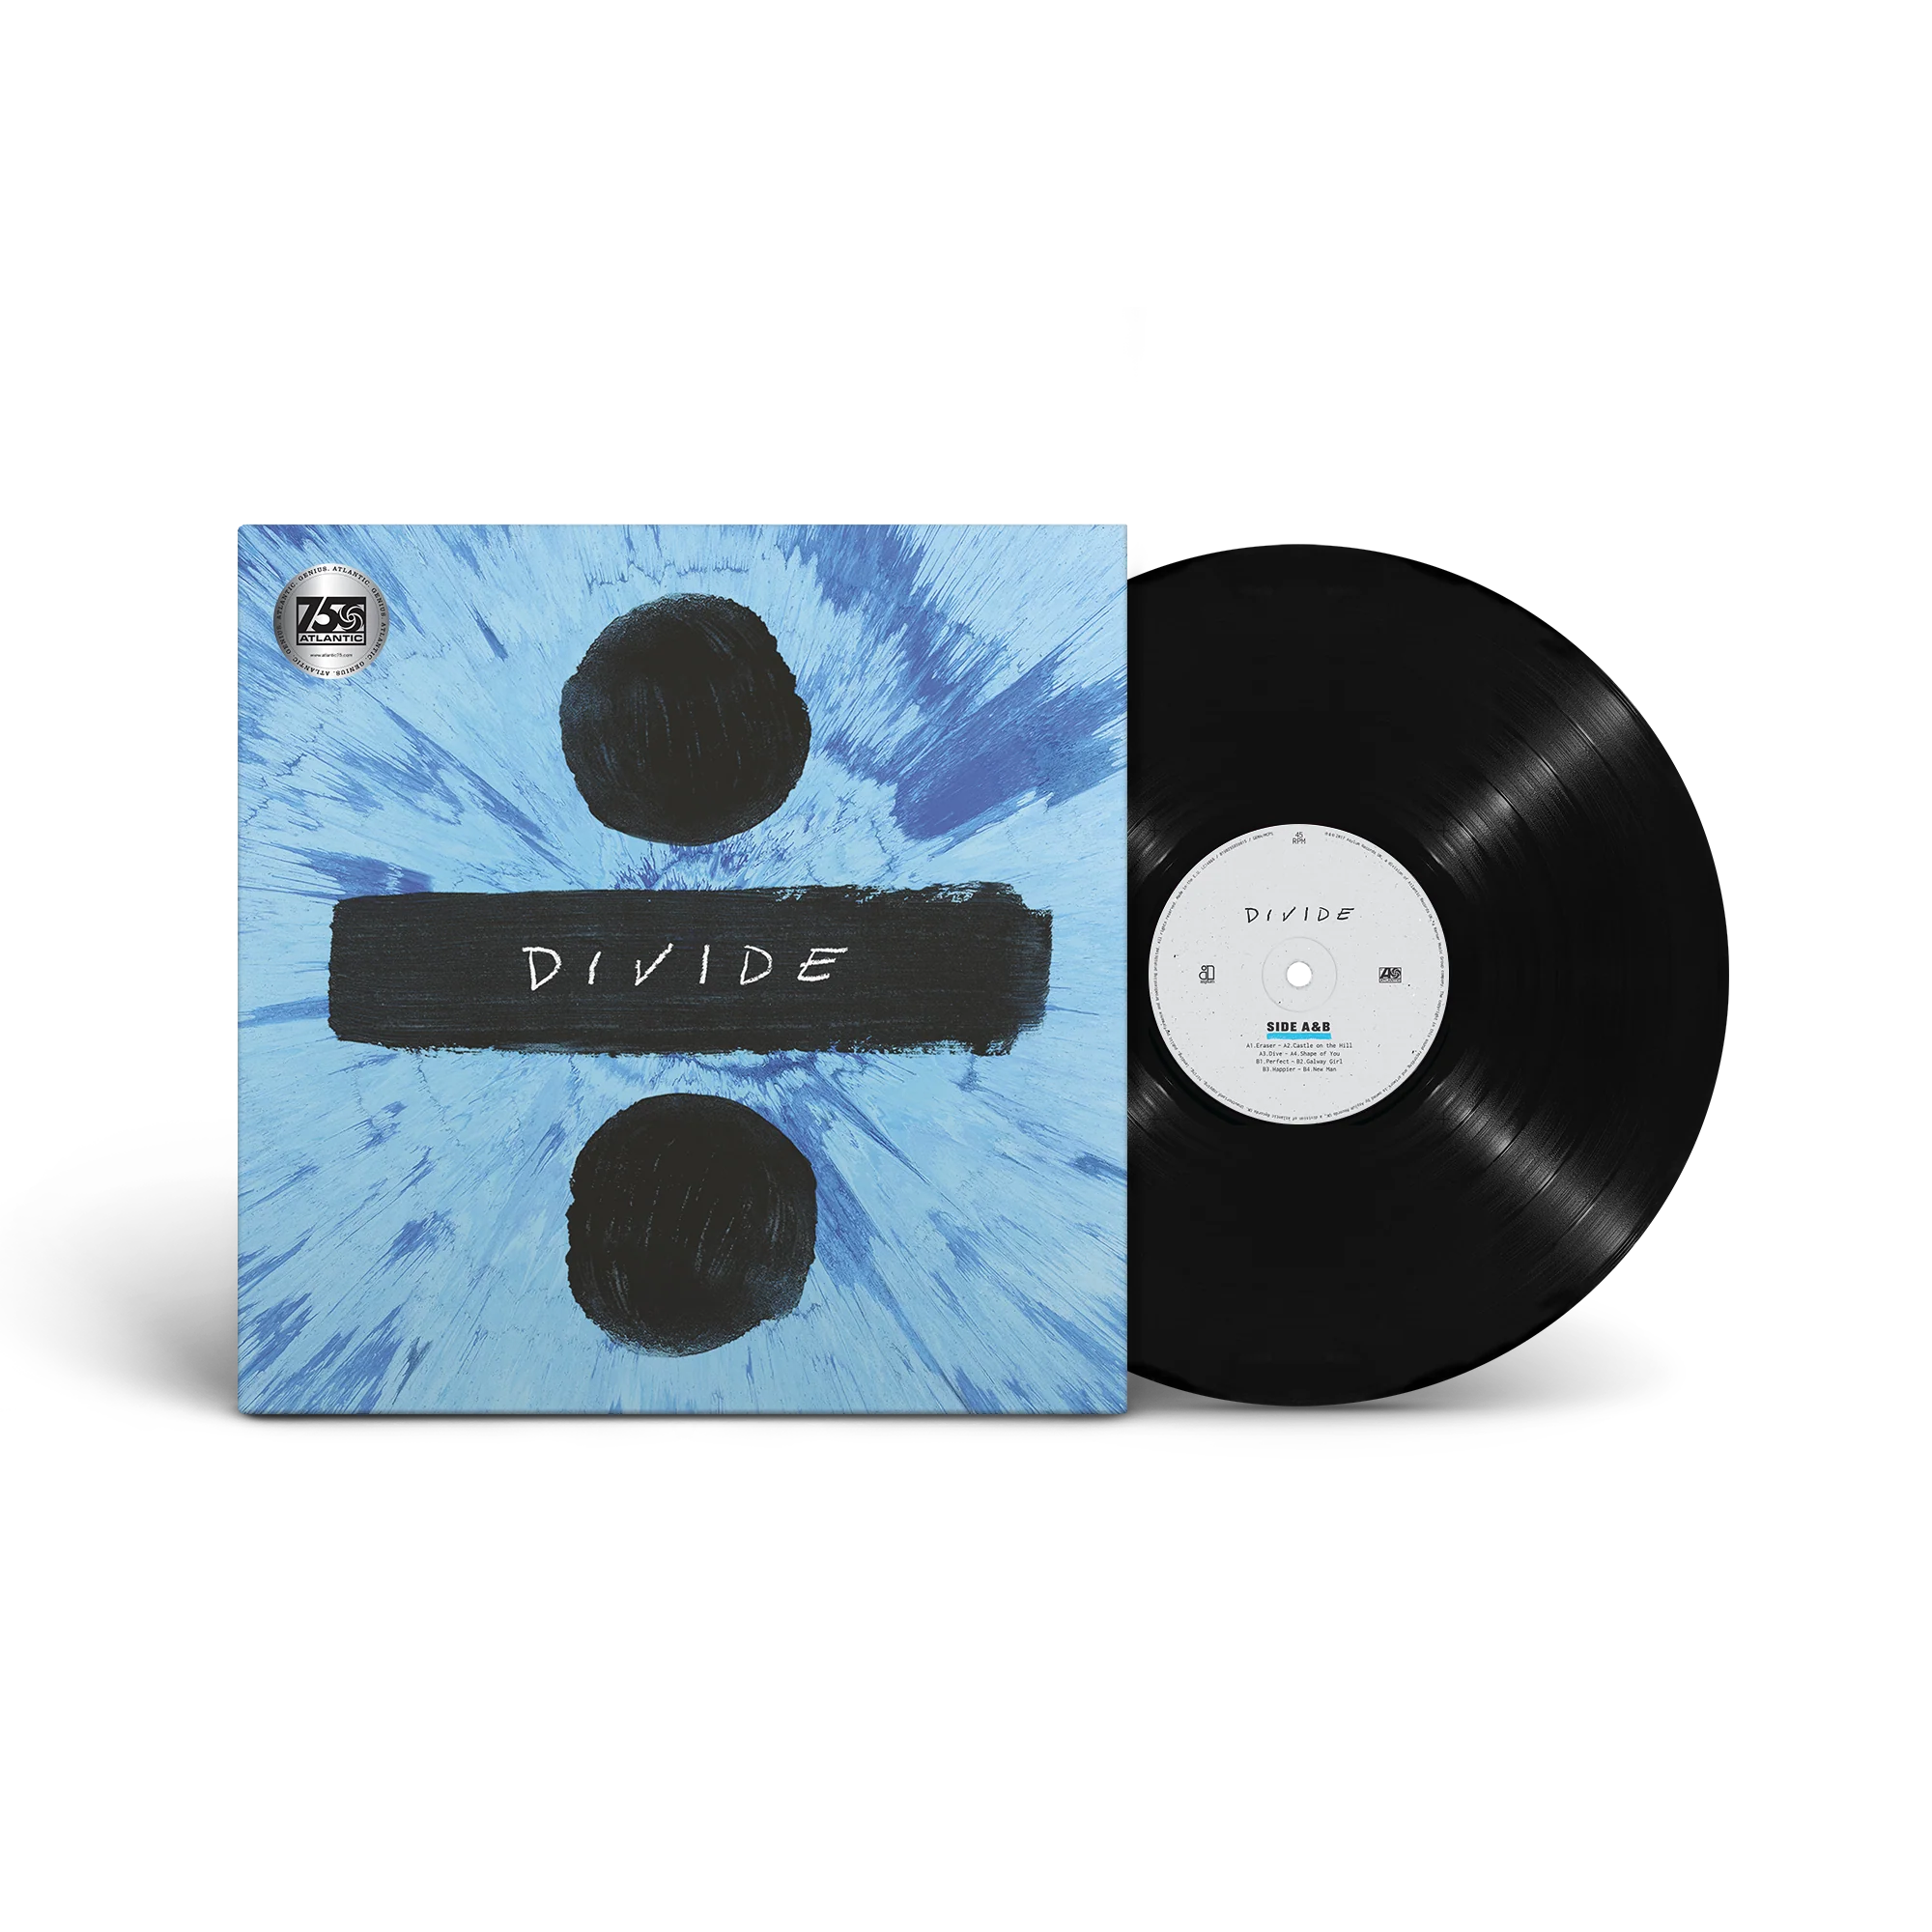 Ed Sheeran - ÷ (Divide): Deluxe Vinyl 2LP